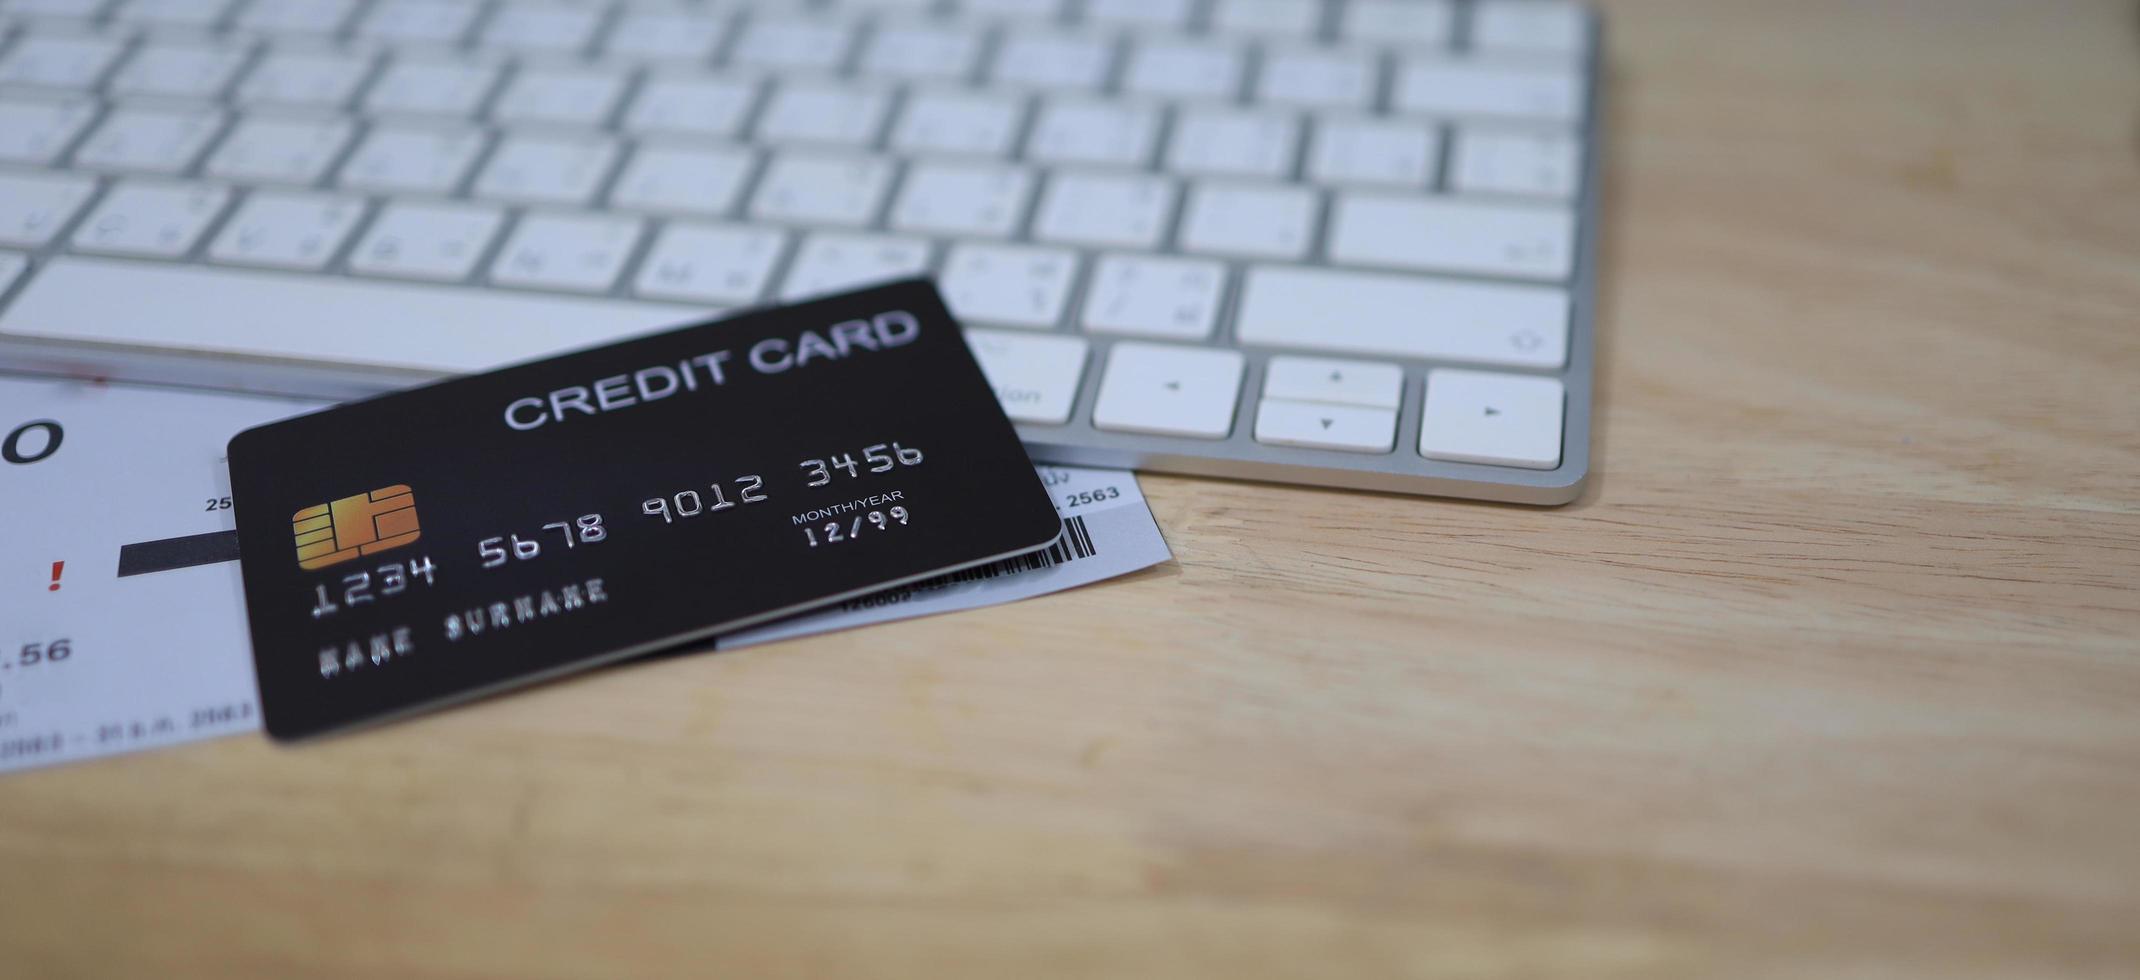 Kreditkartenfinanzierungskonzept, Online-Shopping, finanzielle Sicherheit. foto